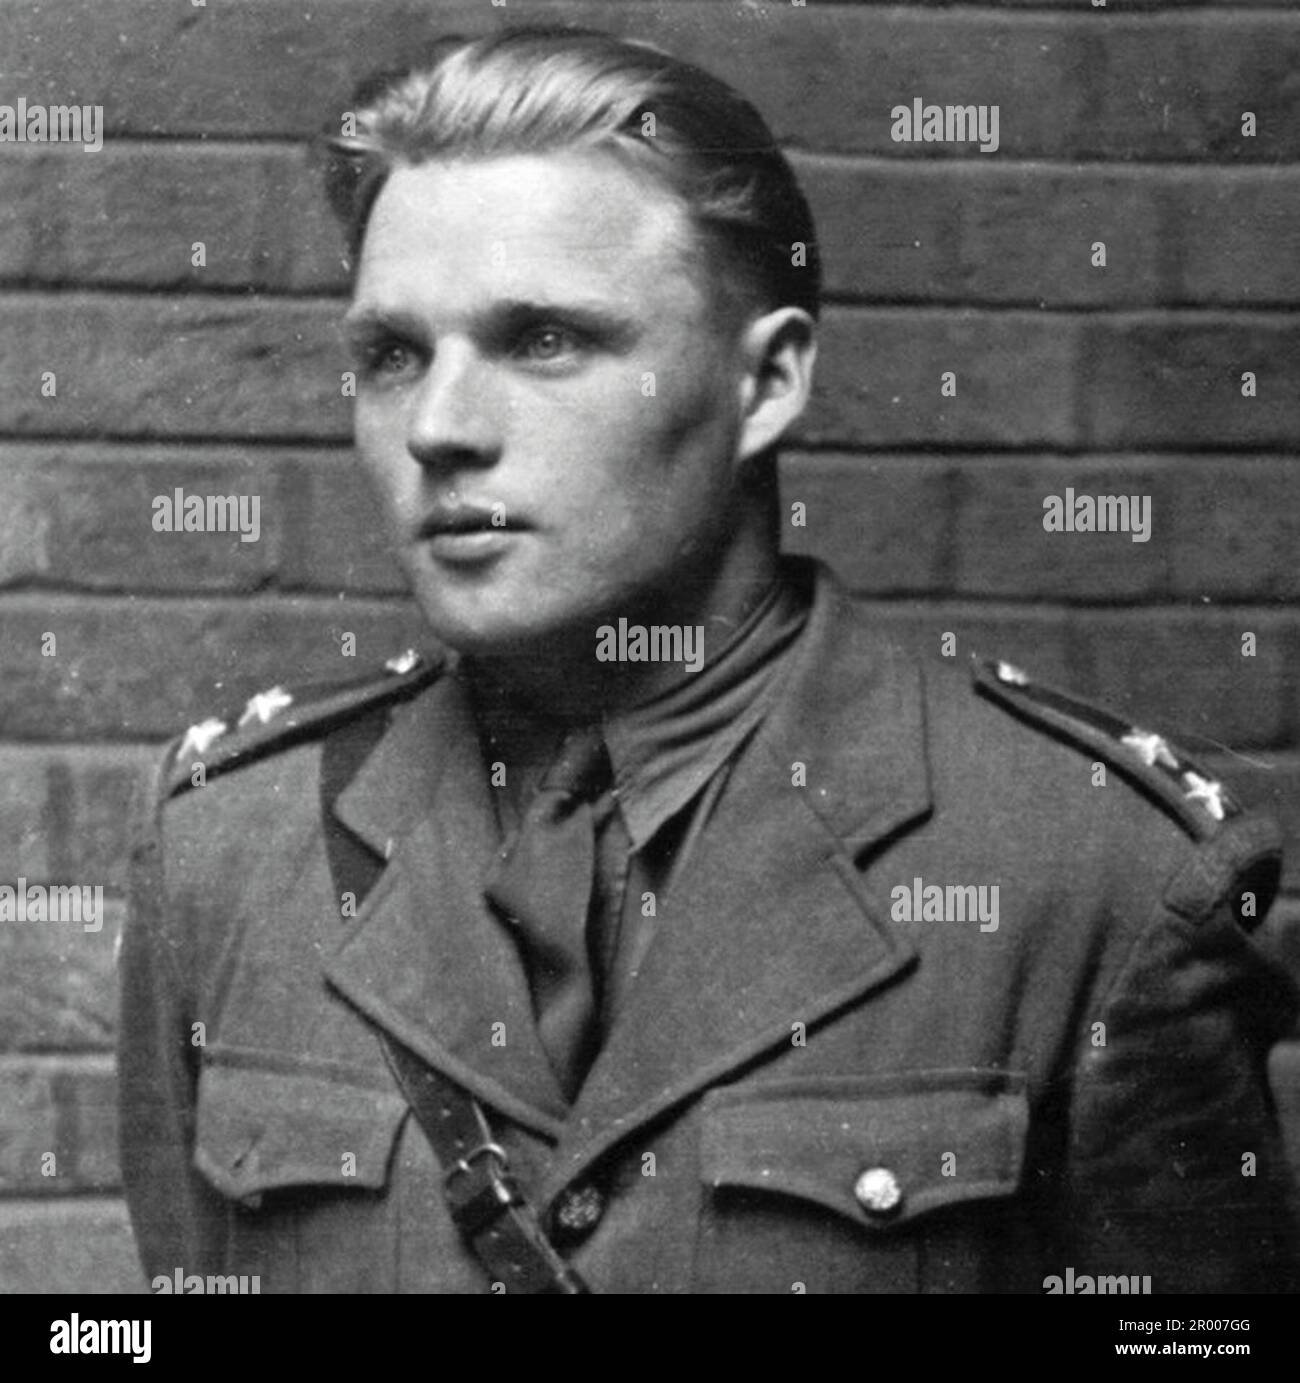 Josef Valčík, einer der Attentäter von Reinhard Heydrich, im Vereinigten Königreich während seiner Ausbildung für seine Rolle bei der Operation Anthropoid. Stockfoto